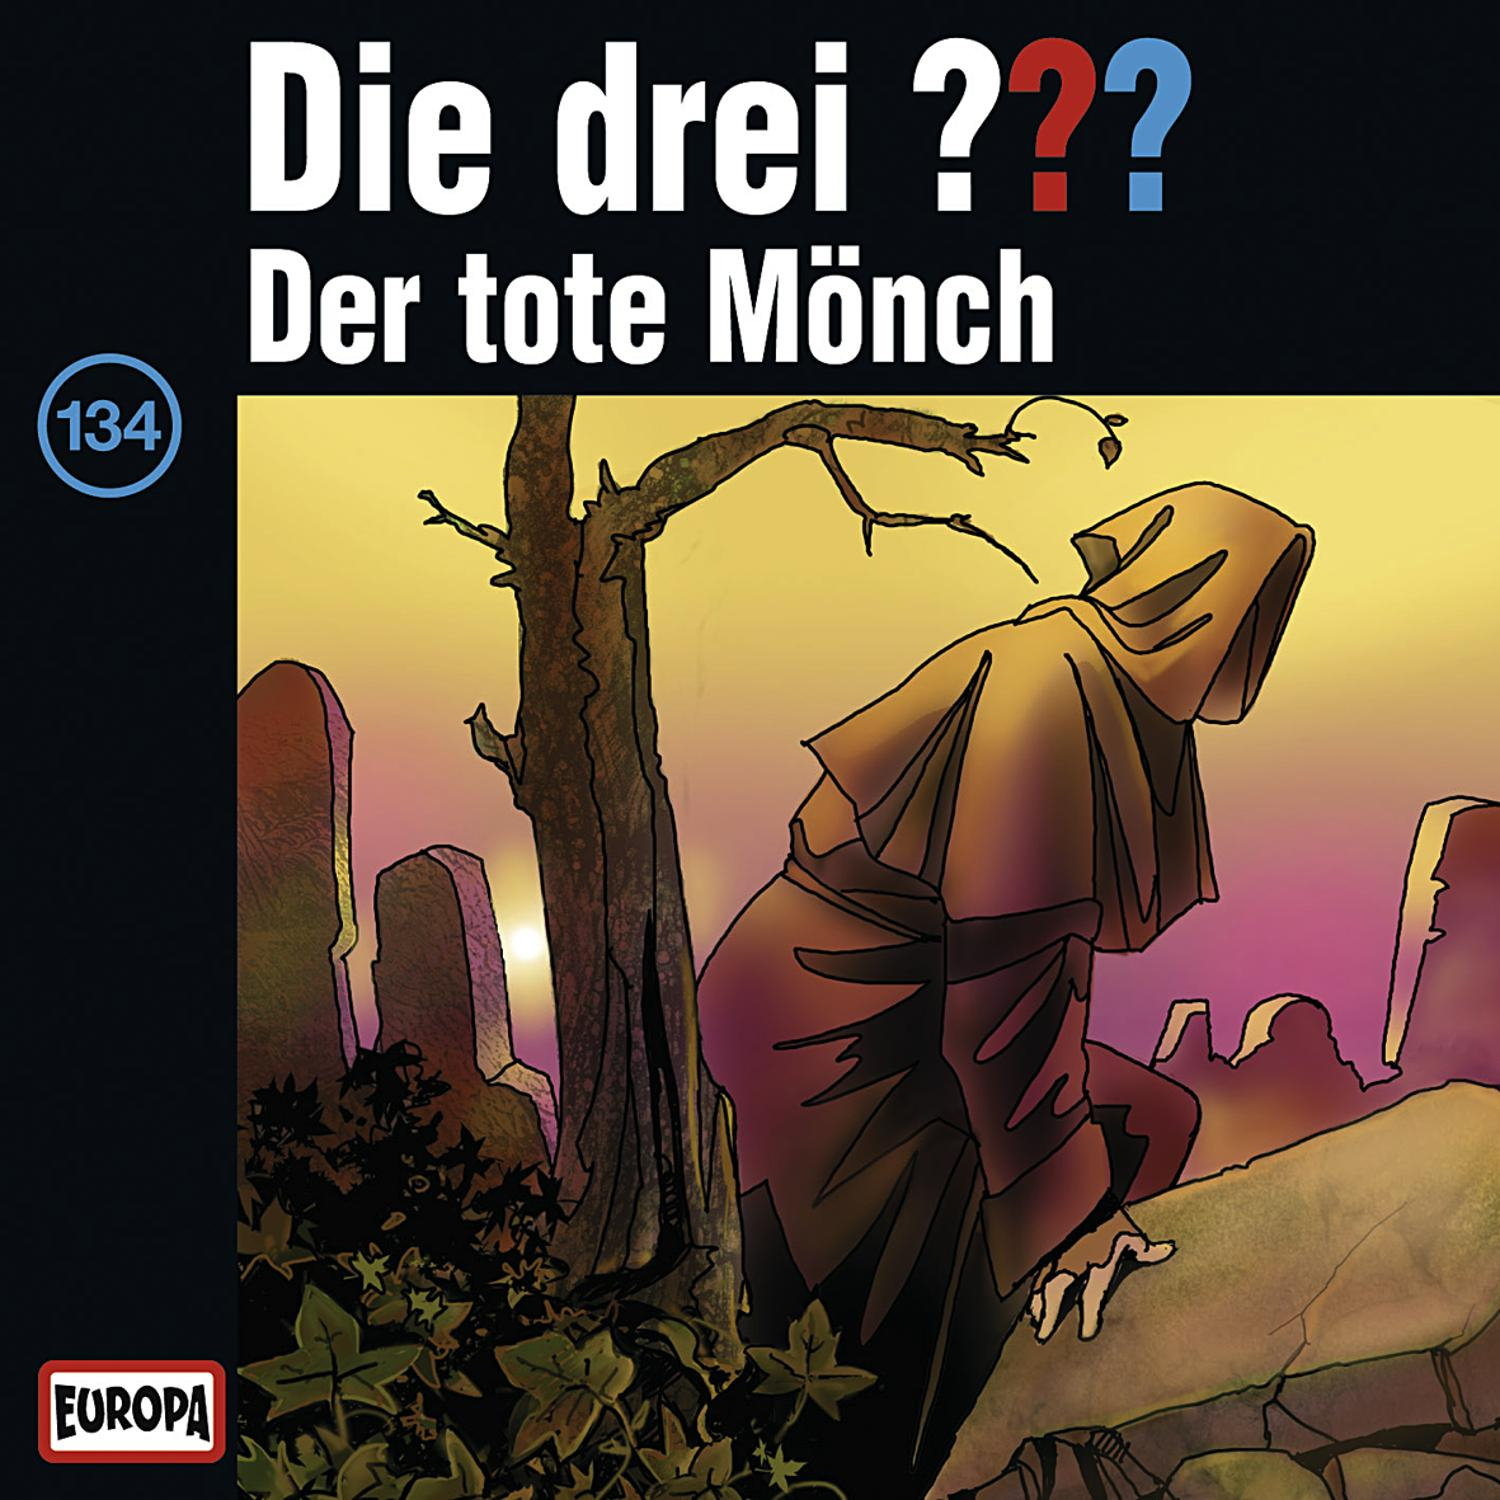 Der (CD) Mönch 134: Die - tote drei ???